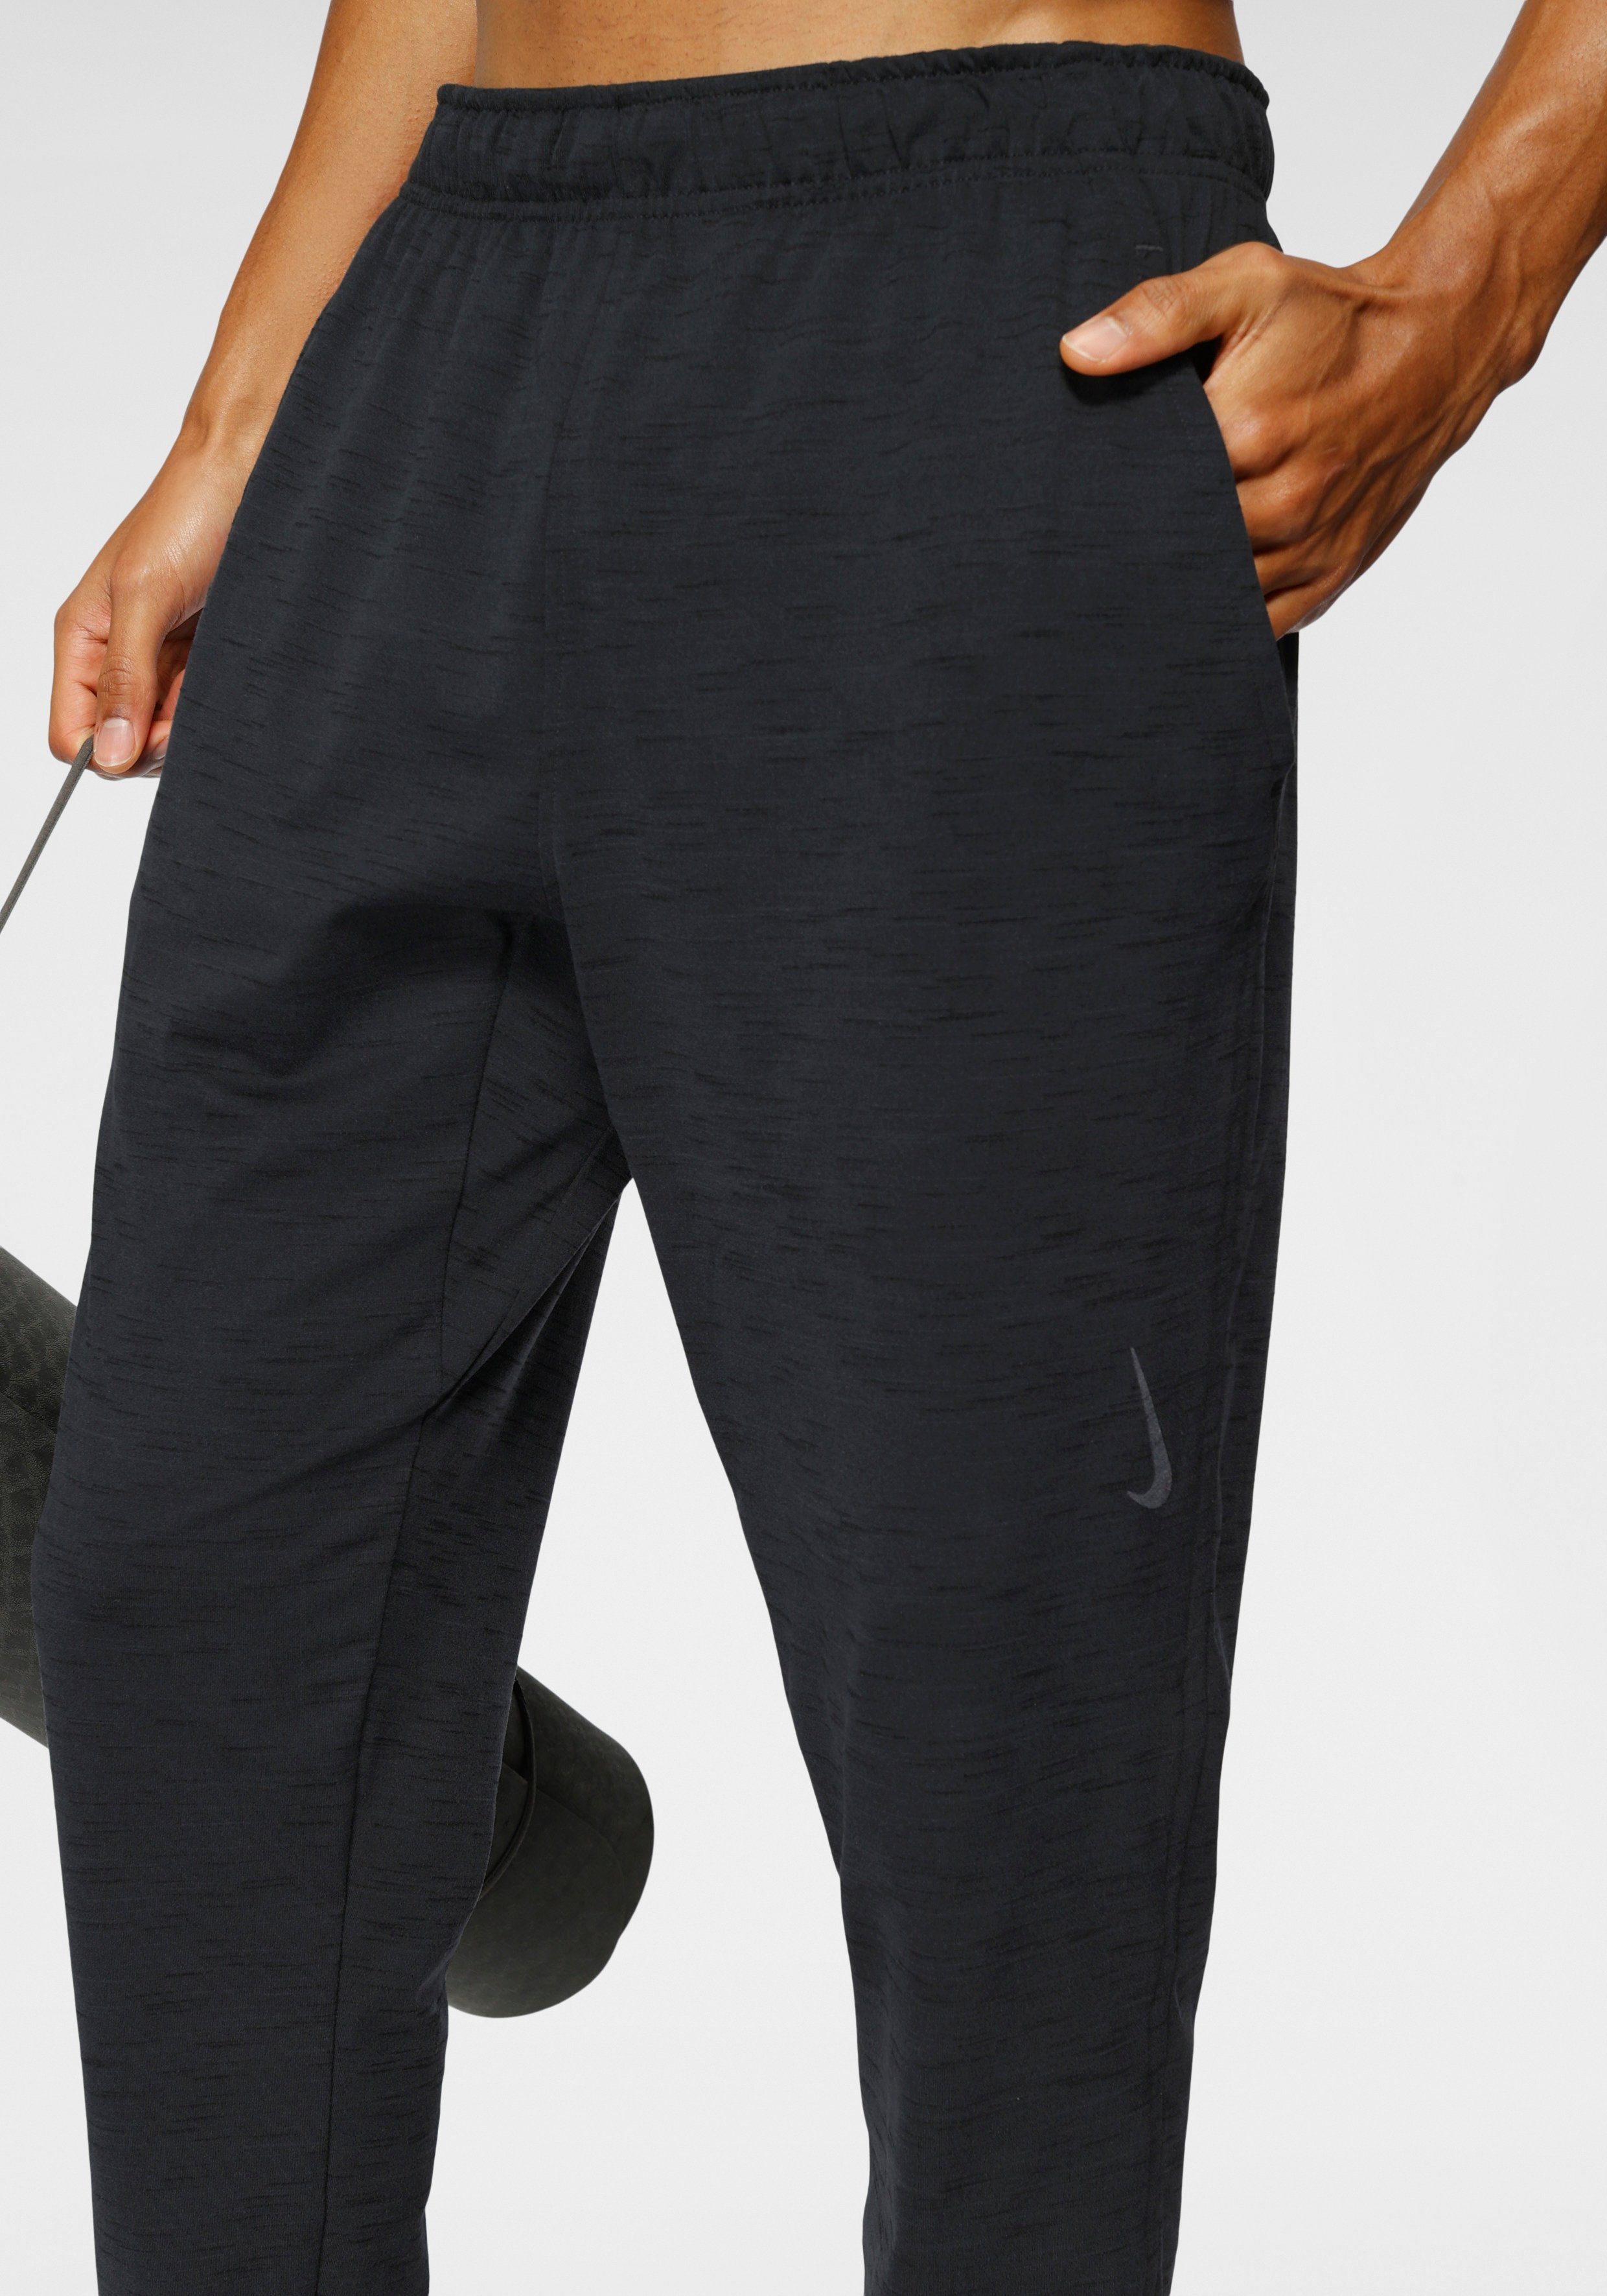 Nike Yogahose »Nike Yoga Dri-fit Men's Pants« | OTTO